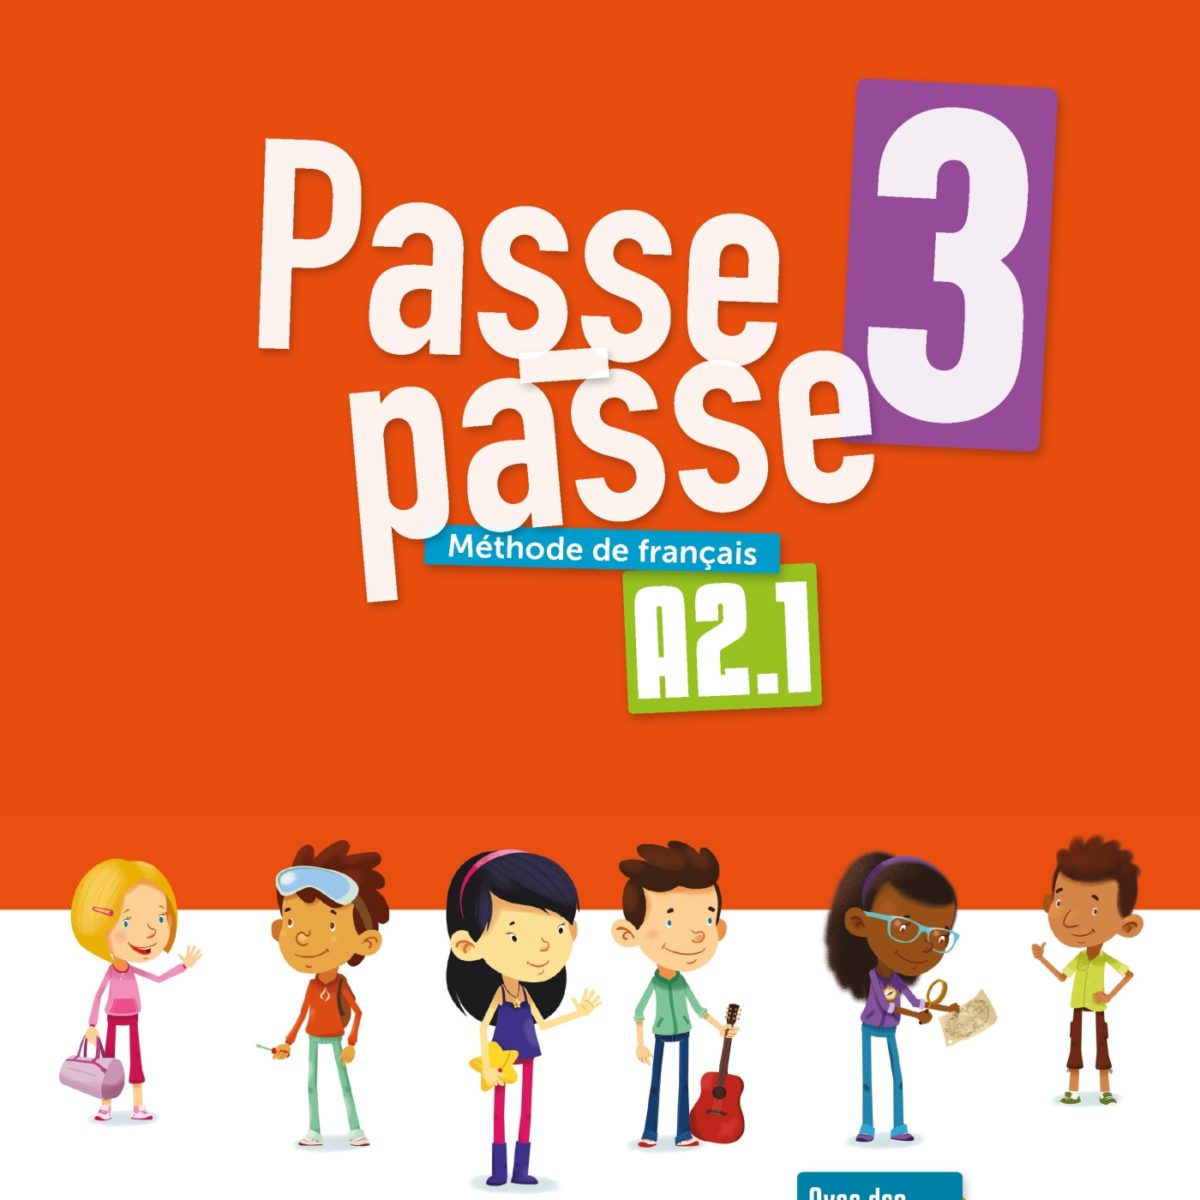 法国原版少儿教材 Passe-passe 3 A2.1 法语儿童班使用的教材